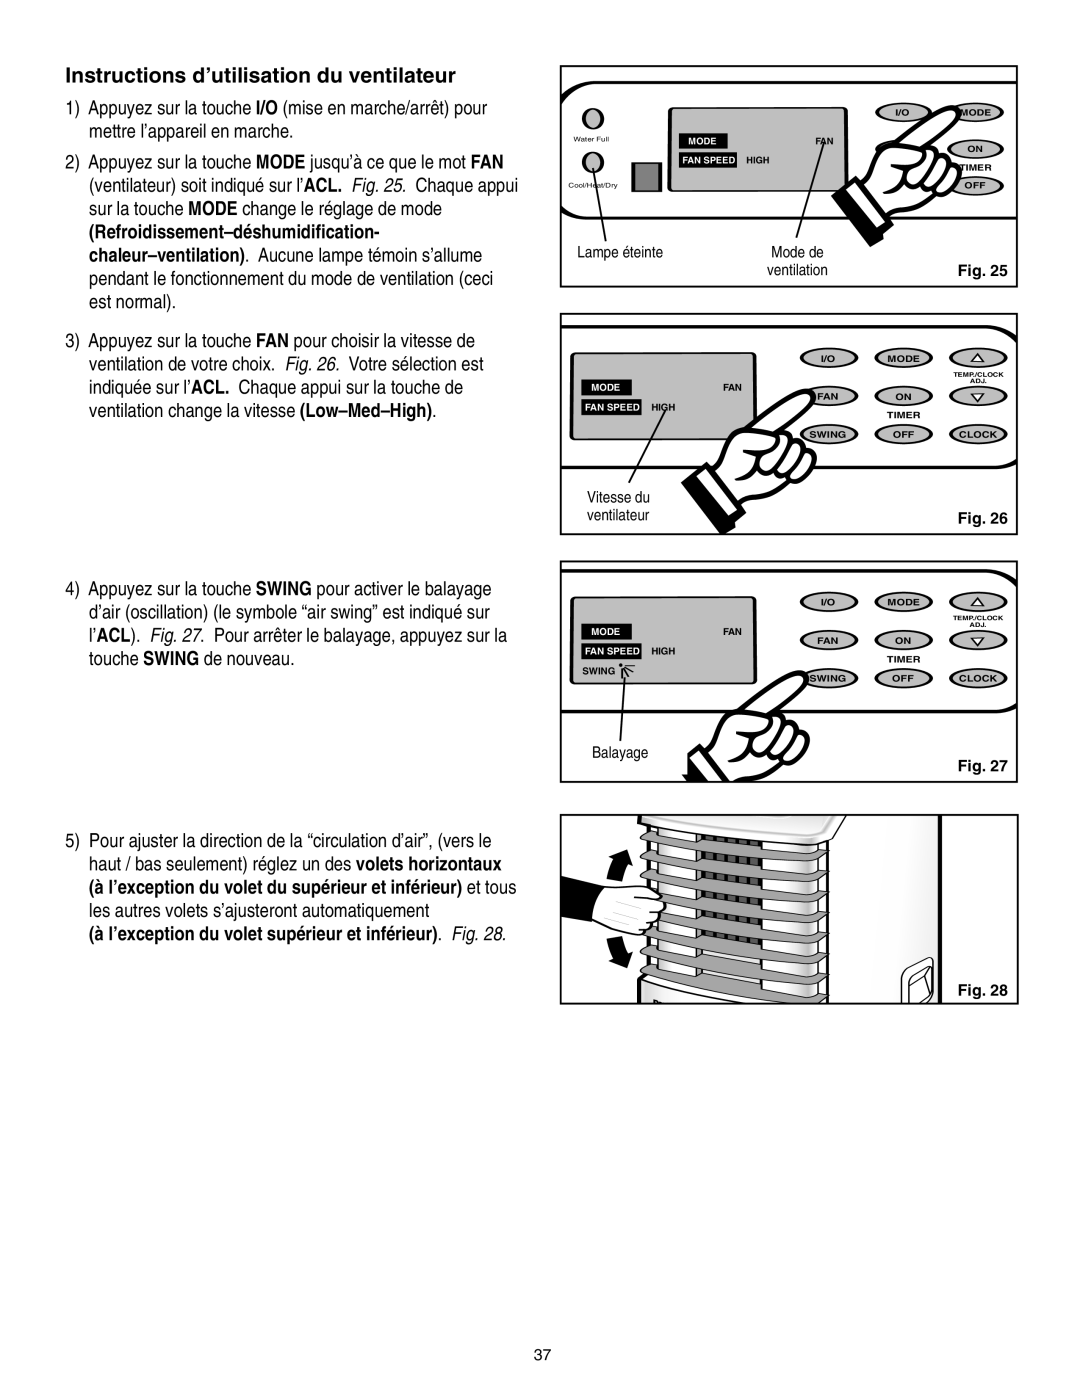 Danby SPAC8499 manual Instructions d’utilisation du ventilateur, Lampe éteinte, Fig 